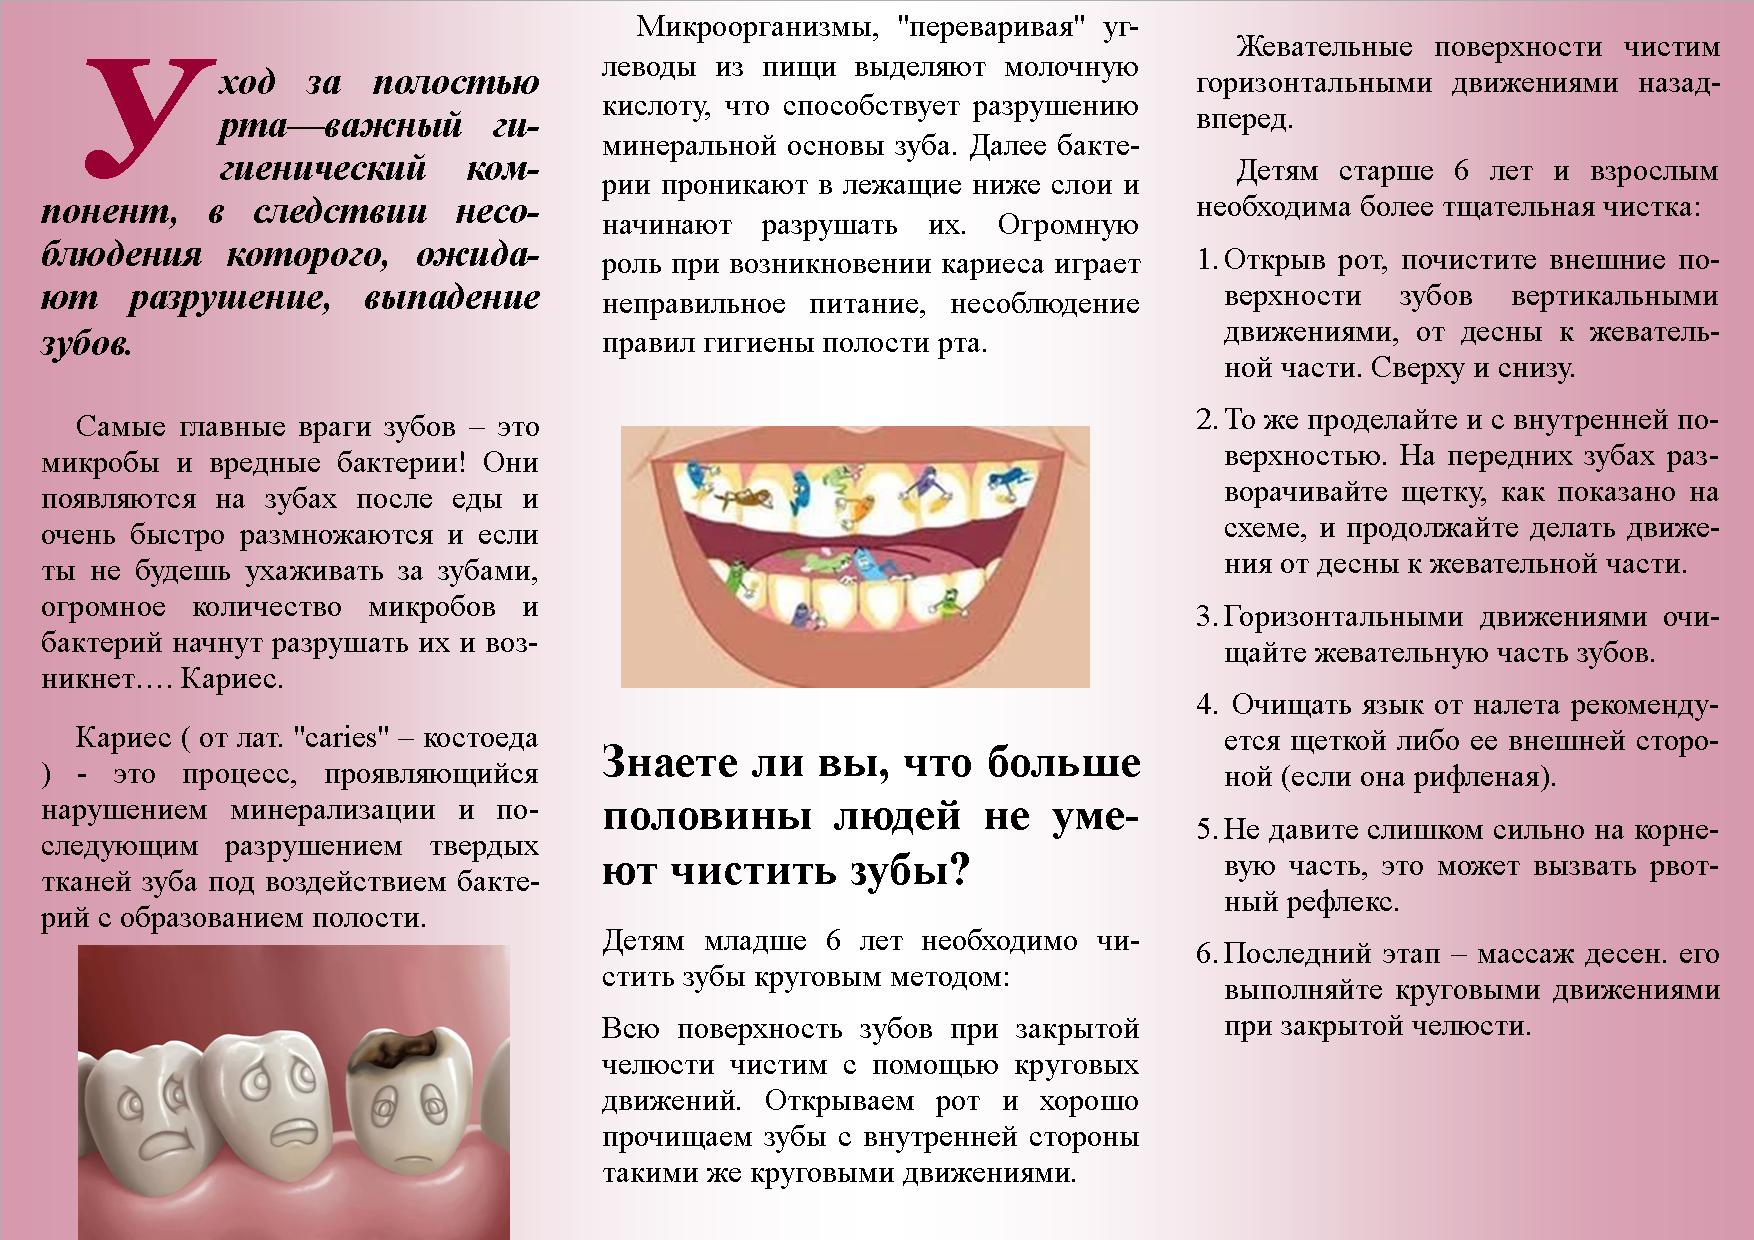 Меры профилактики сохранения зубов. Брошюра Здоровые зубы. Памятка по гигиене полости рта. Памятка Здоровые зубы. Брошюра по гигиене полости рта.